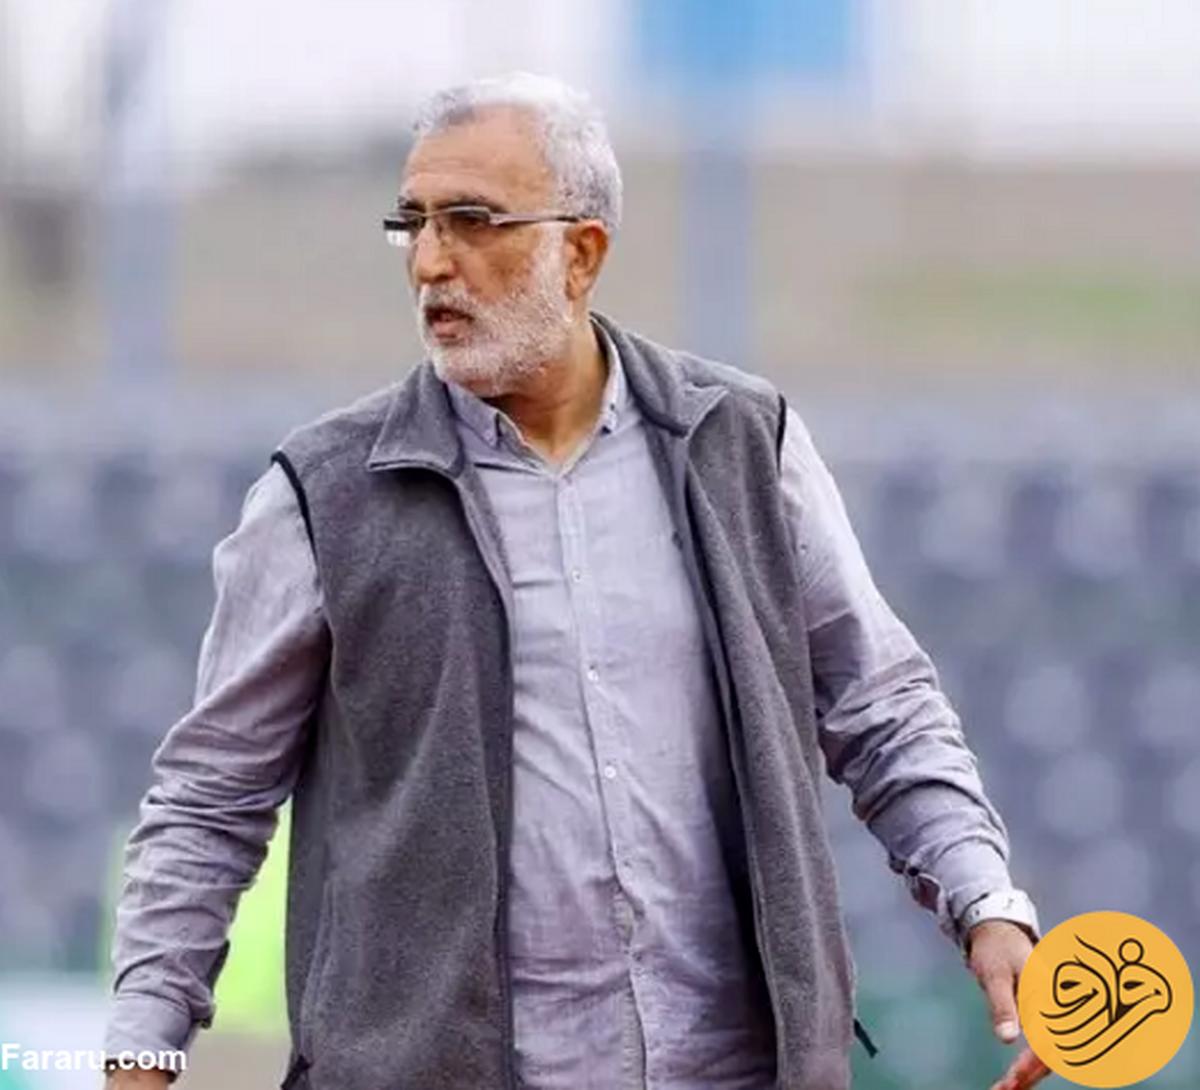 حسین فرکی هم به تیم ملی نه گفت| این رقابت نمایشی و شایسته مردم نیست